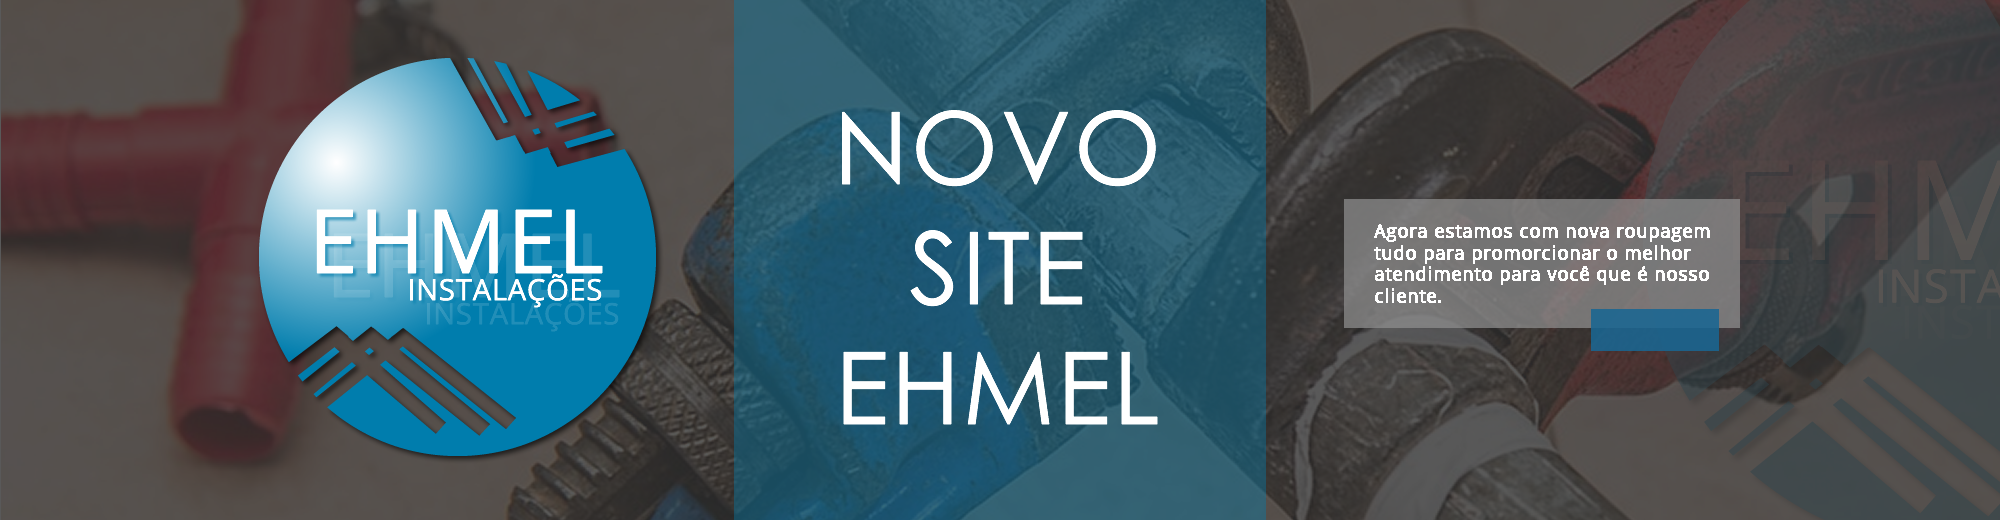 Site novo EHMEL